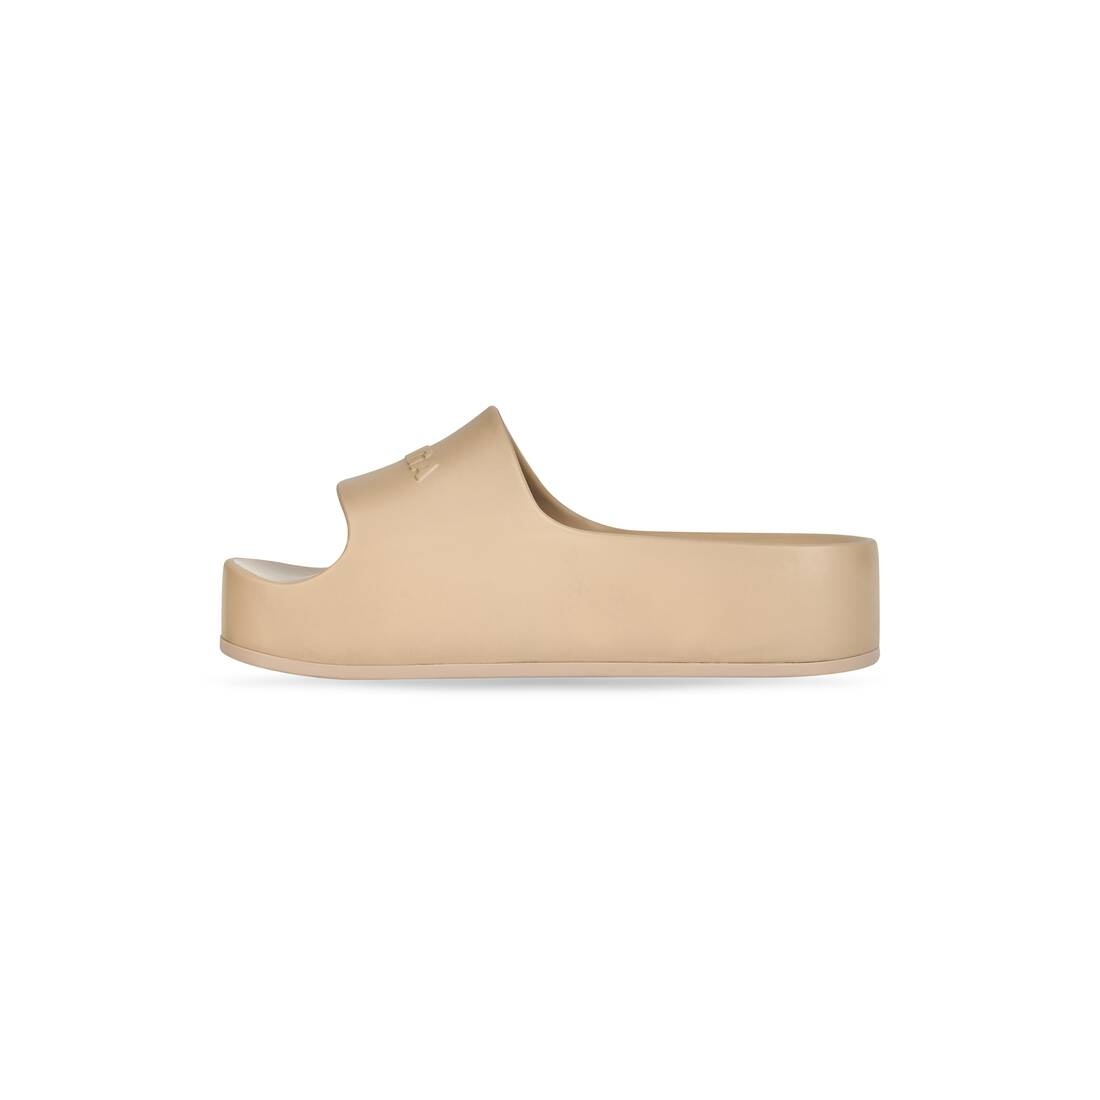 Women's Chunky Slide Sandal in Brown - 3